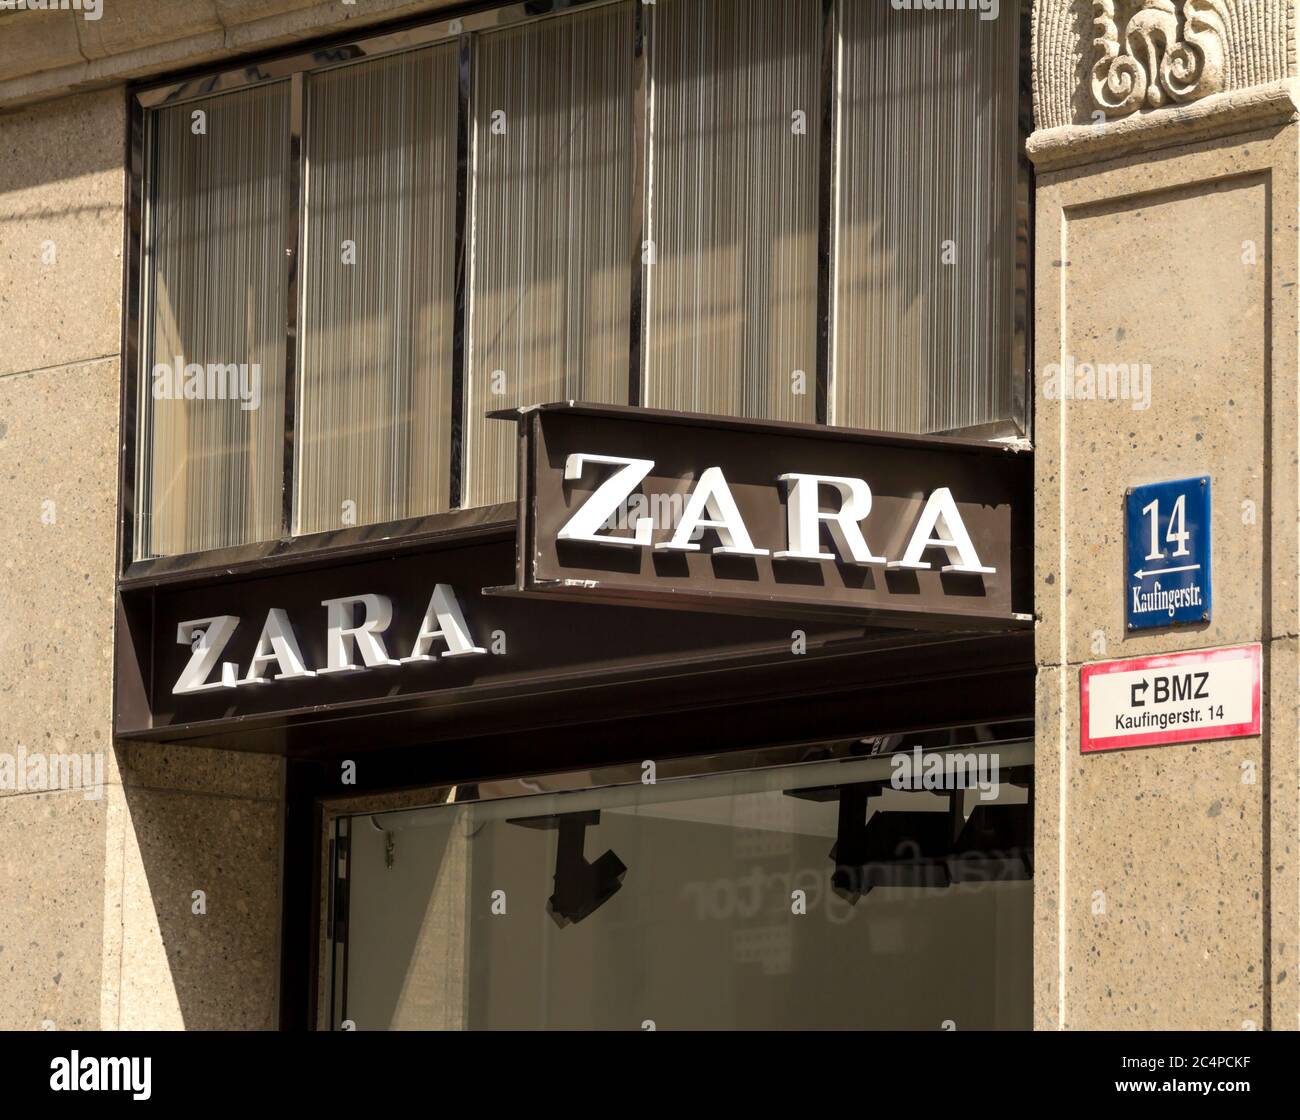 Munich, Alemania : Tienda Zara en Munich. Zara es una tienda española de  ropa y accesorios Fotografía de stock - Alamy